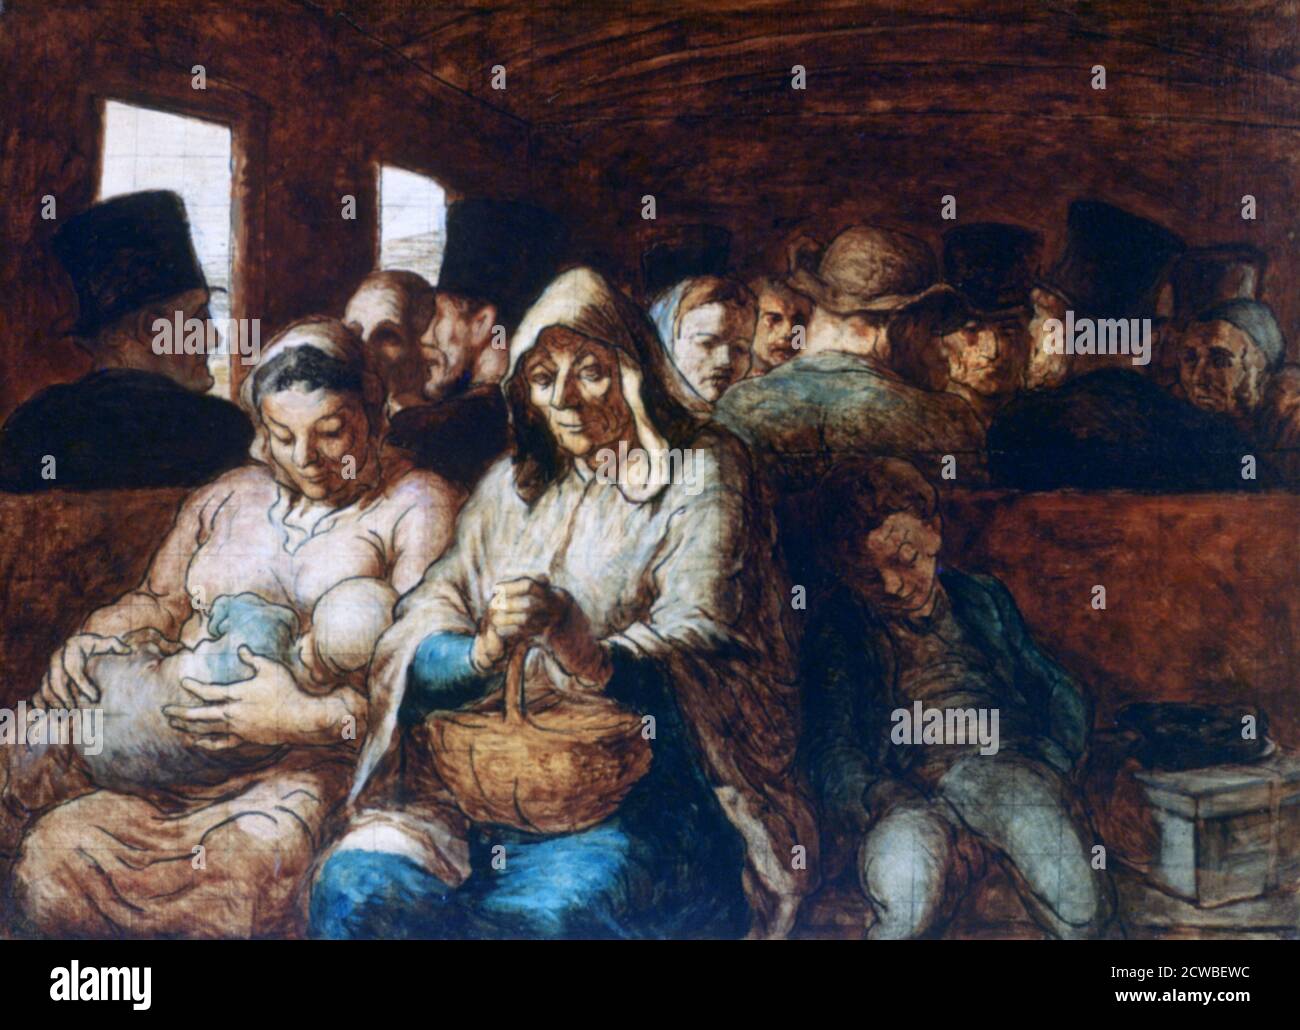 Il trasporto di terza classe», c1863-1865. Artista: Honoré Daumier. Honore-Victorin Daumier (1808-1879) è stato un printmaker, caricaturista, pittore e scultore francese. Foto Stock